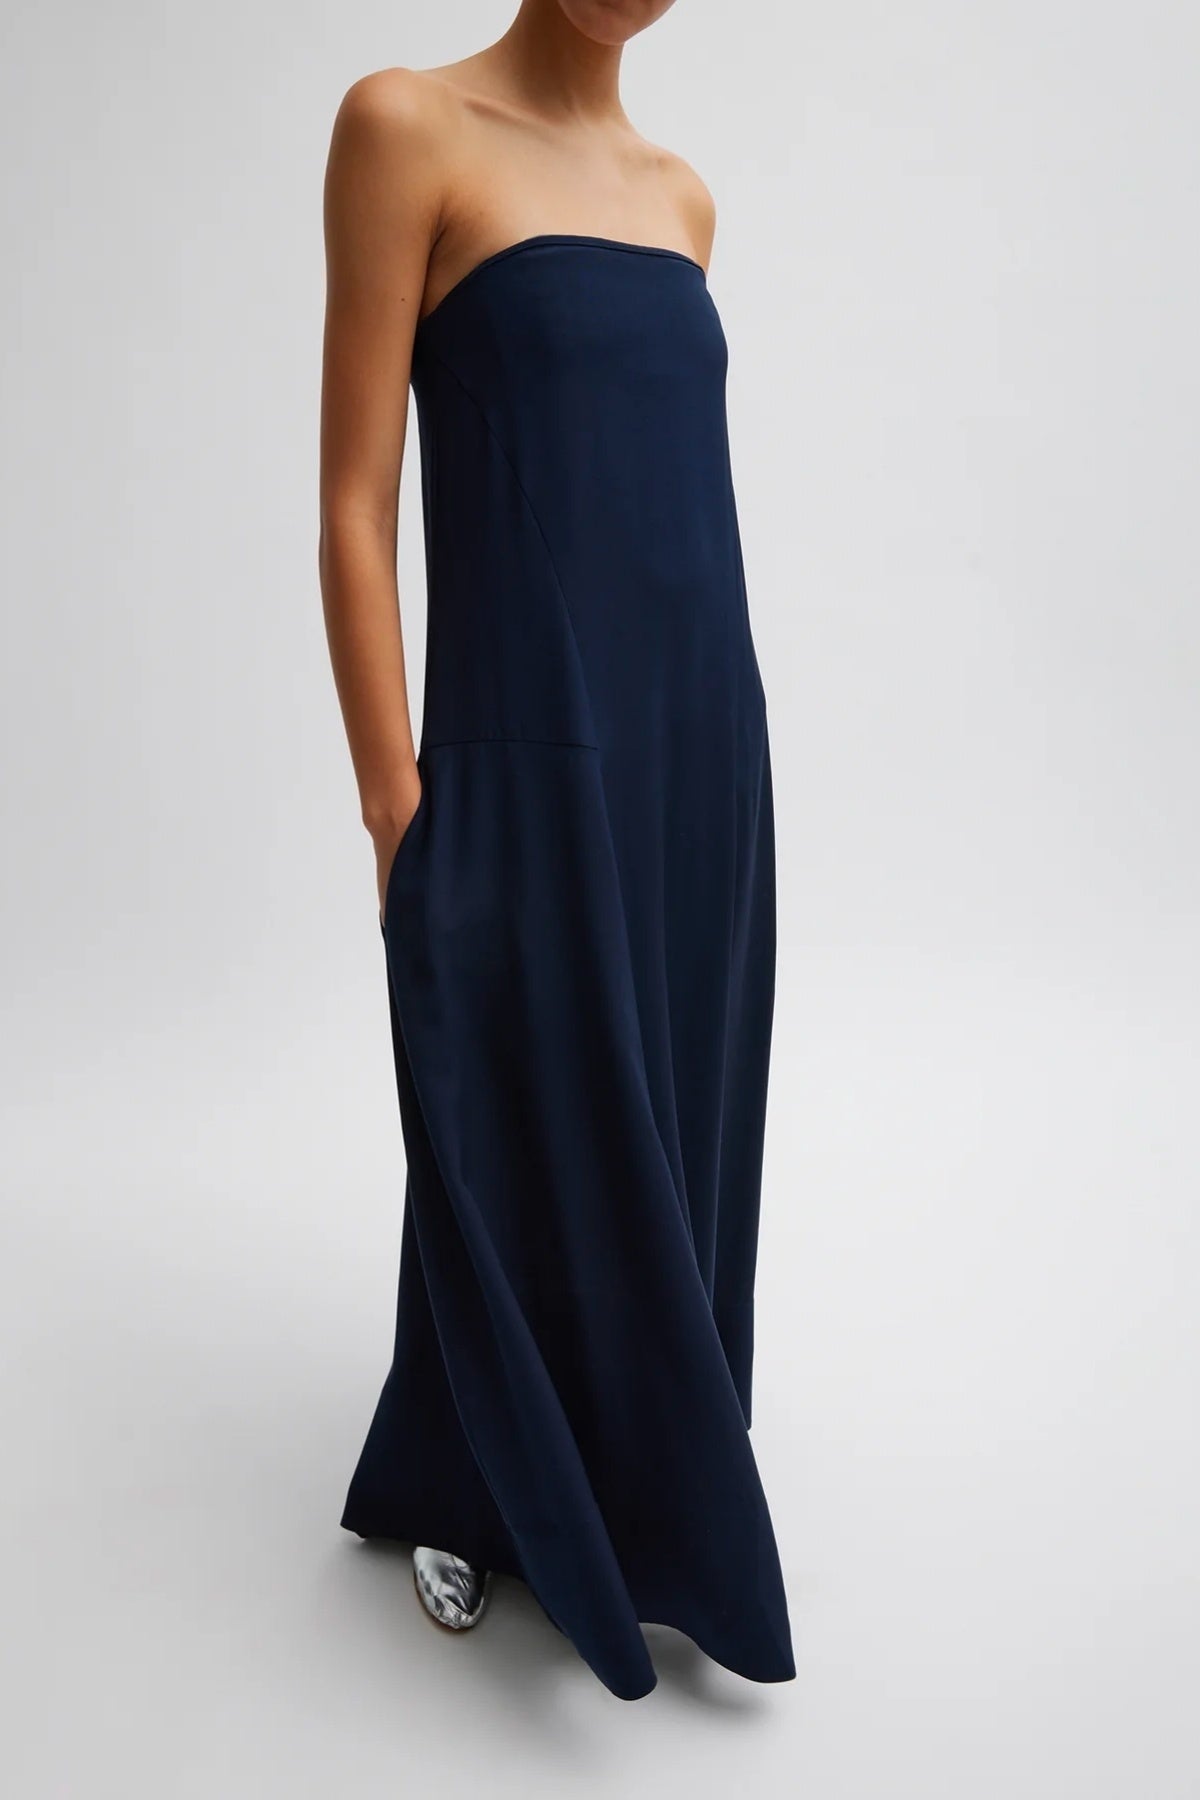 Designer Dresses – Grace Melbourne